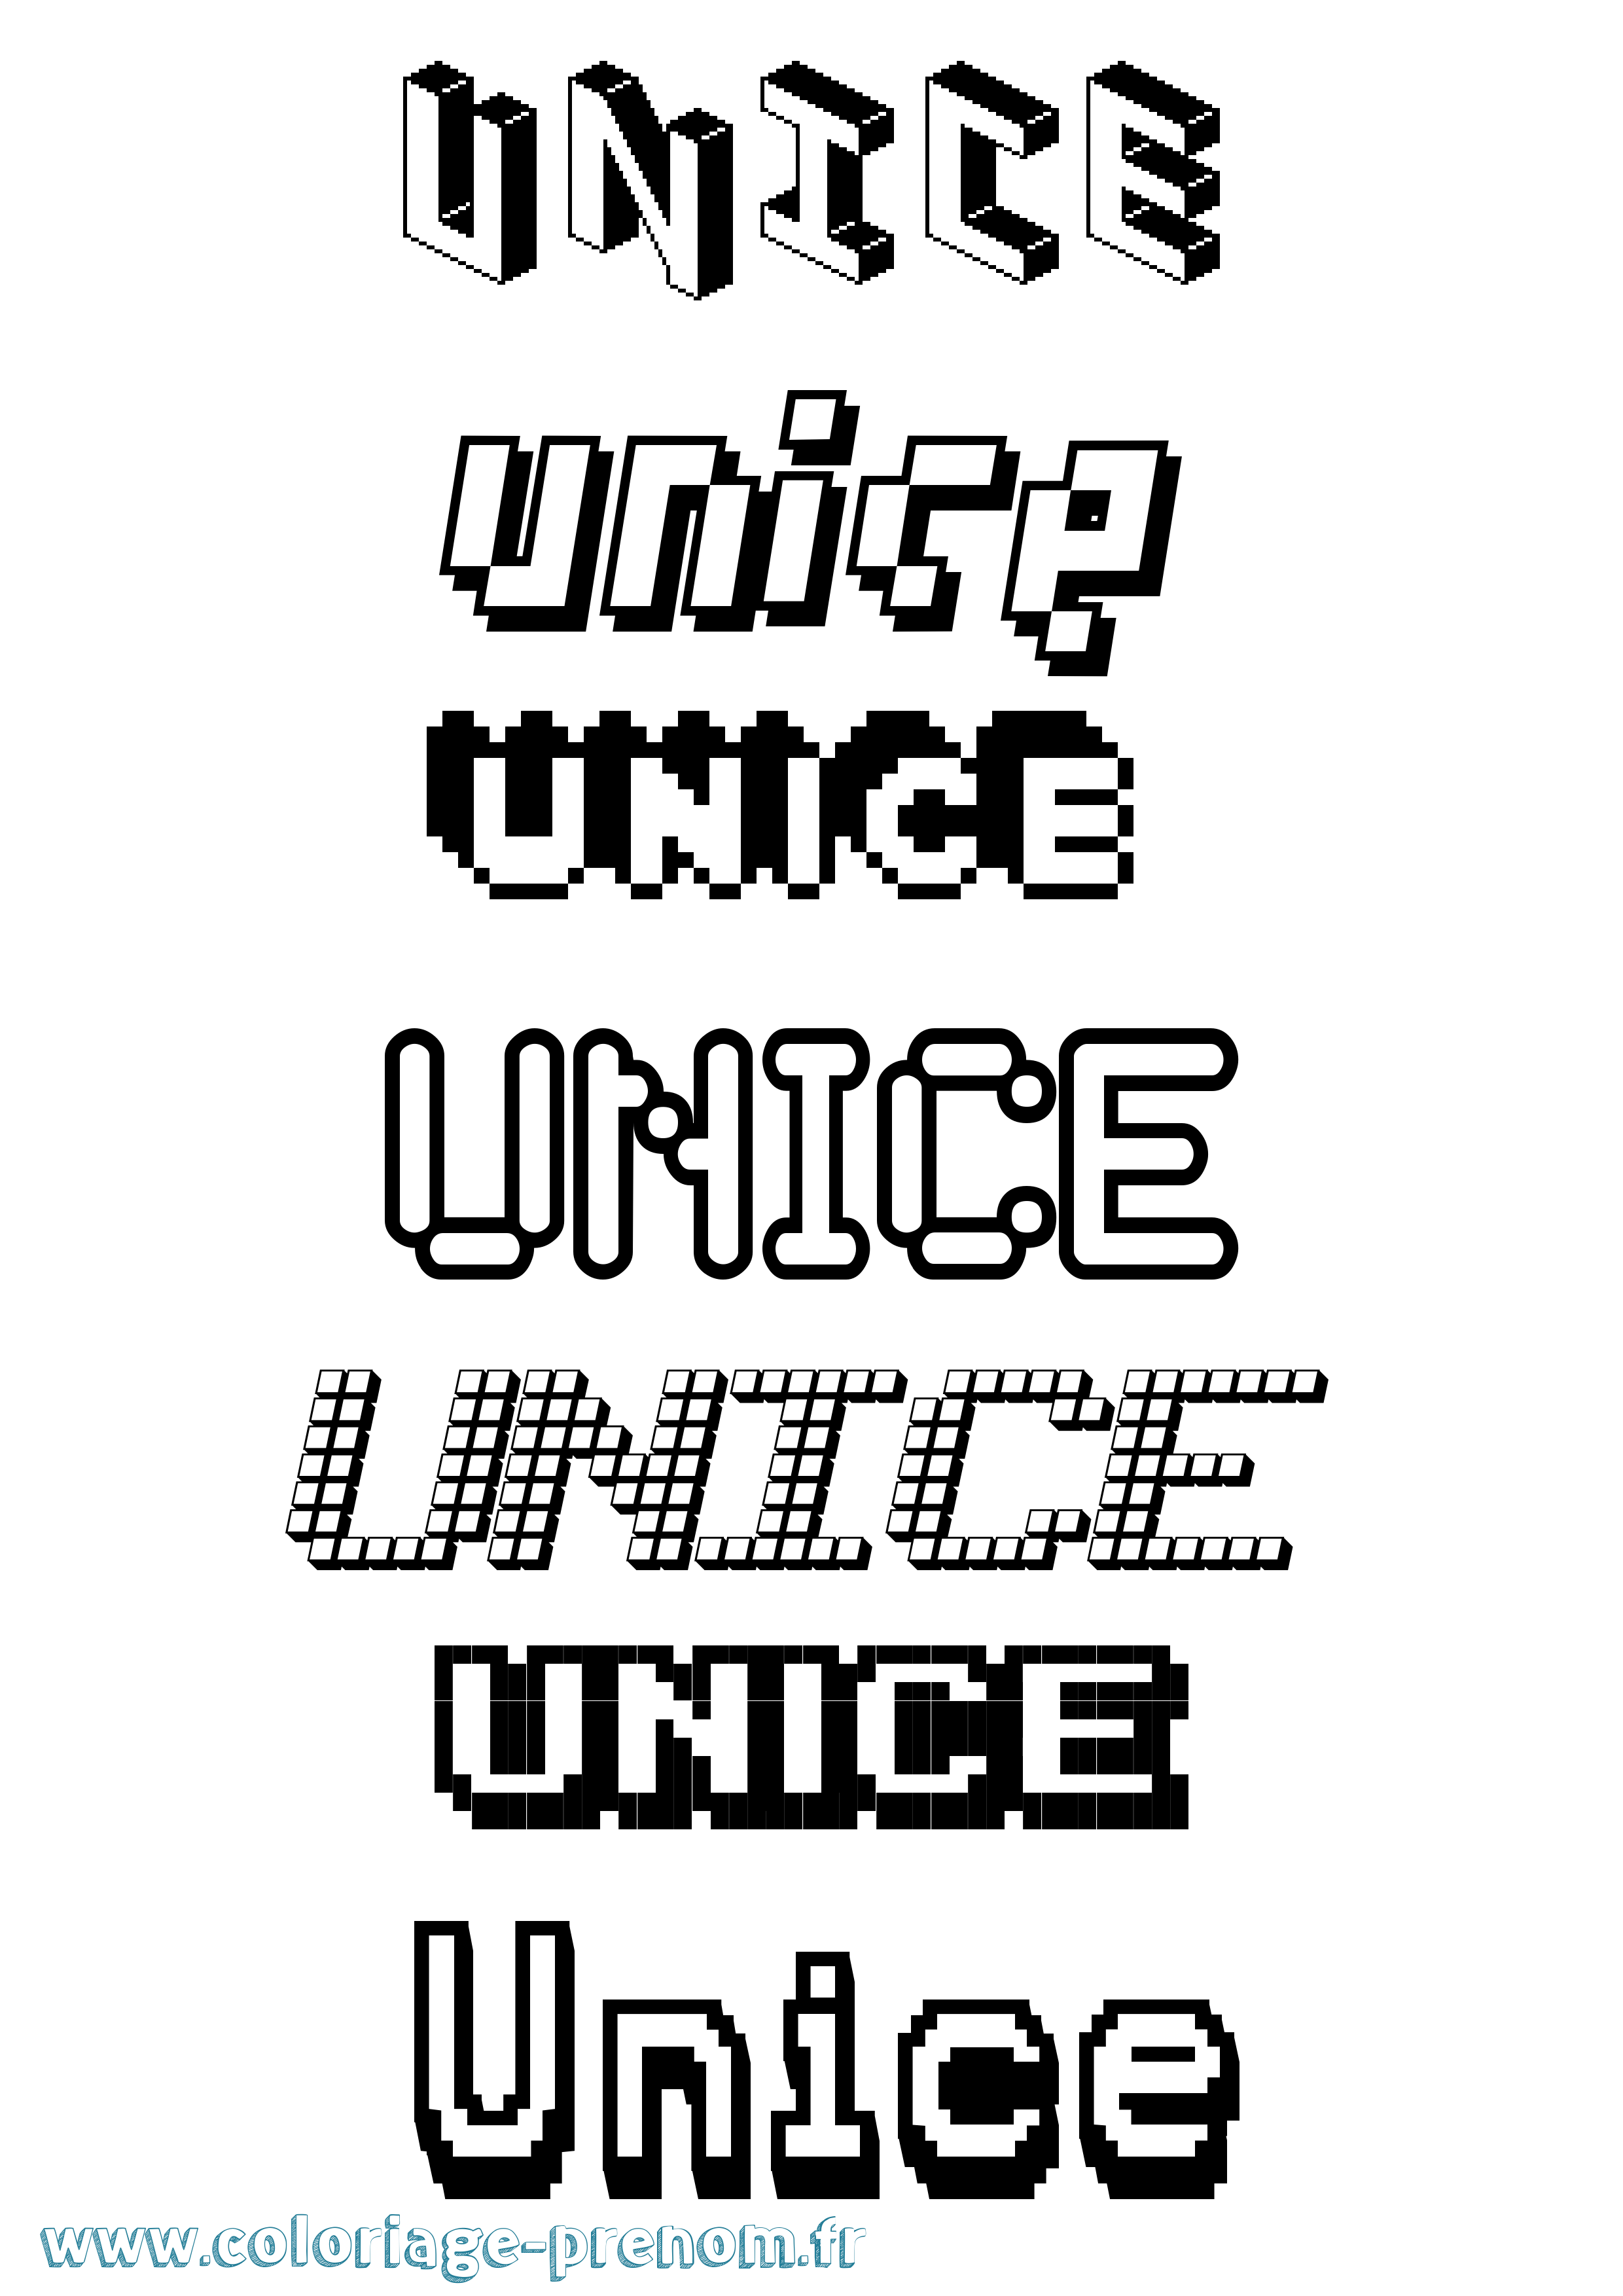 Coloriage prénom Unice Pixel